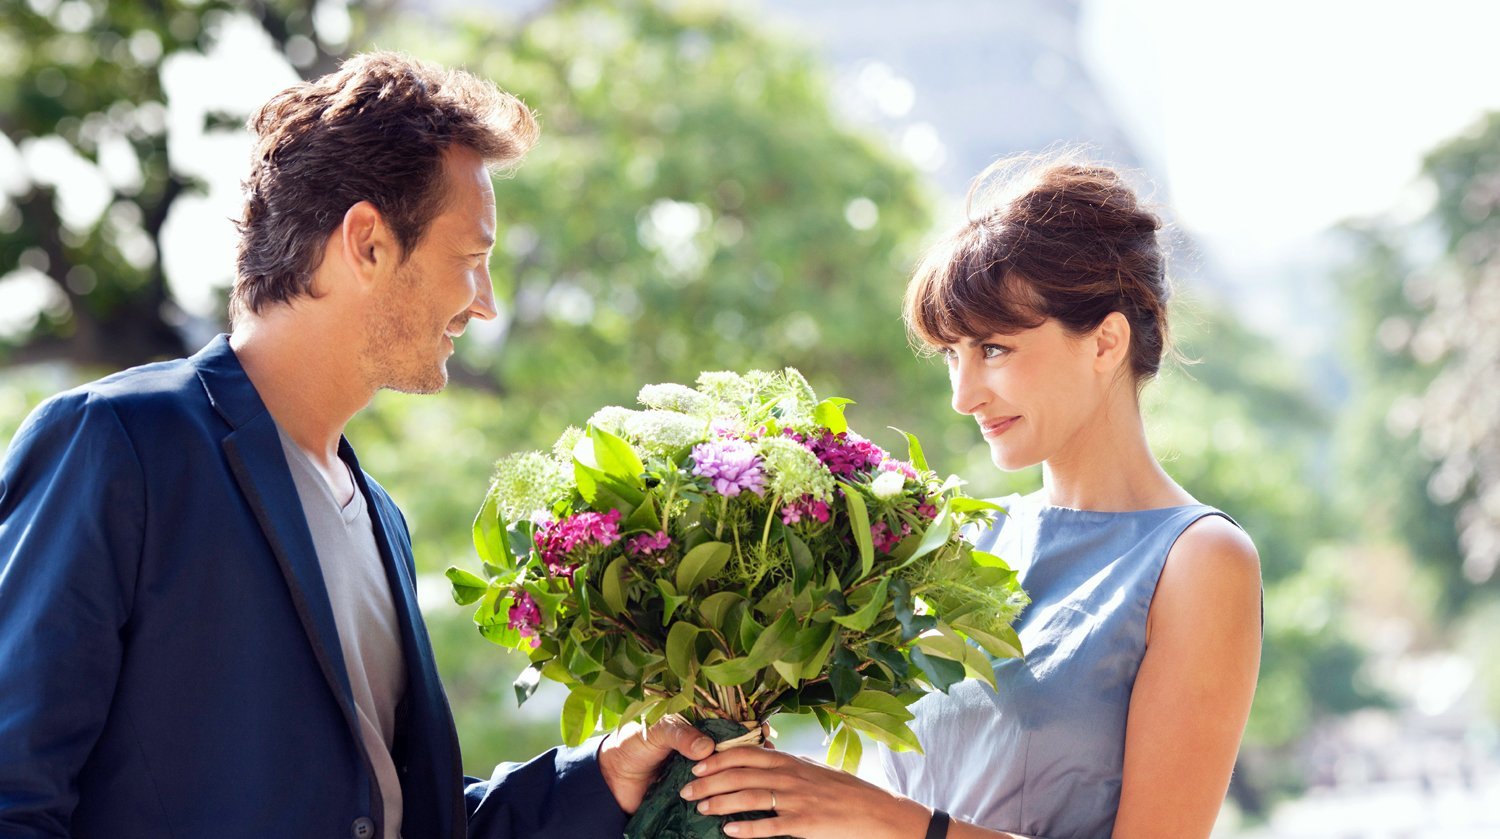 Ухаживать за ней и даже. Парень дарит девушке цветы. Мужчина дарит цветы женщине. Мужчина дарит букет цветов. Парень даёт девушке цветы.